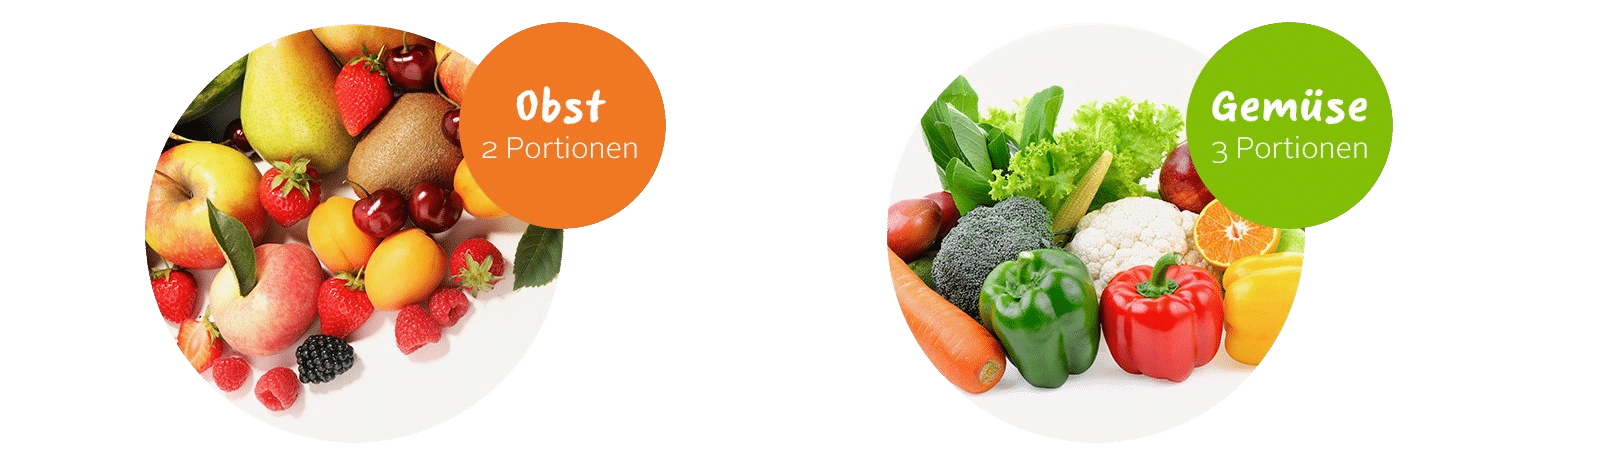 Obst und Gemüse Portionen